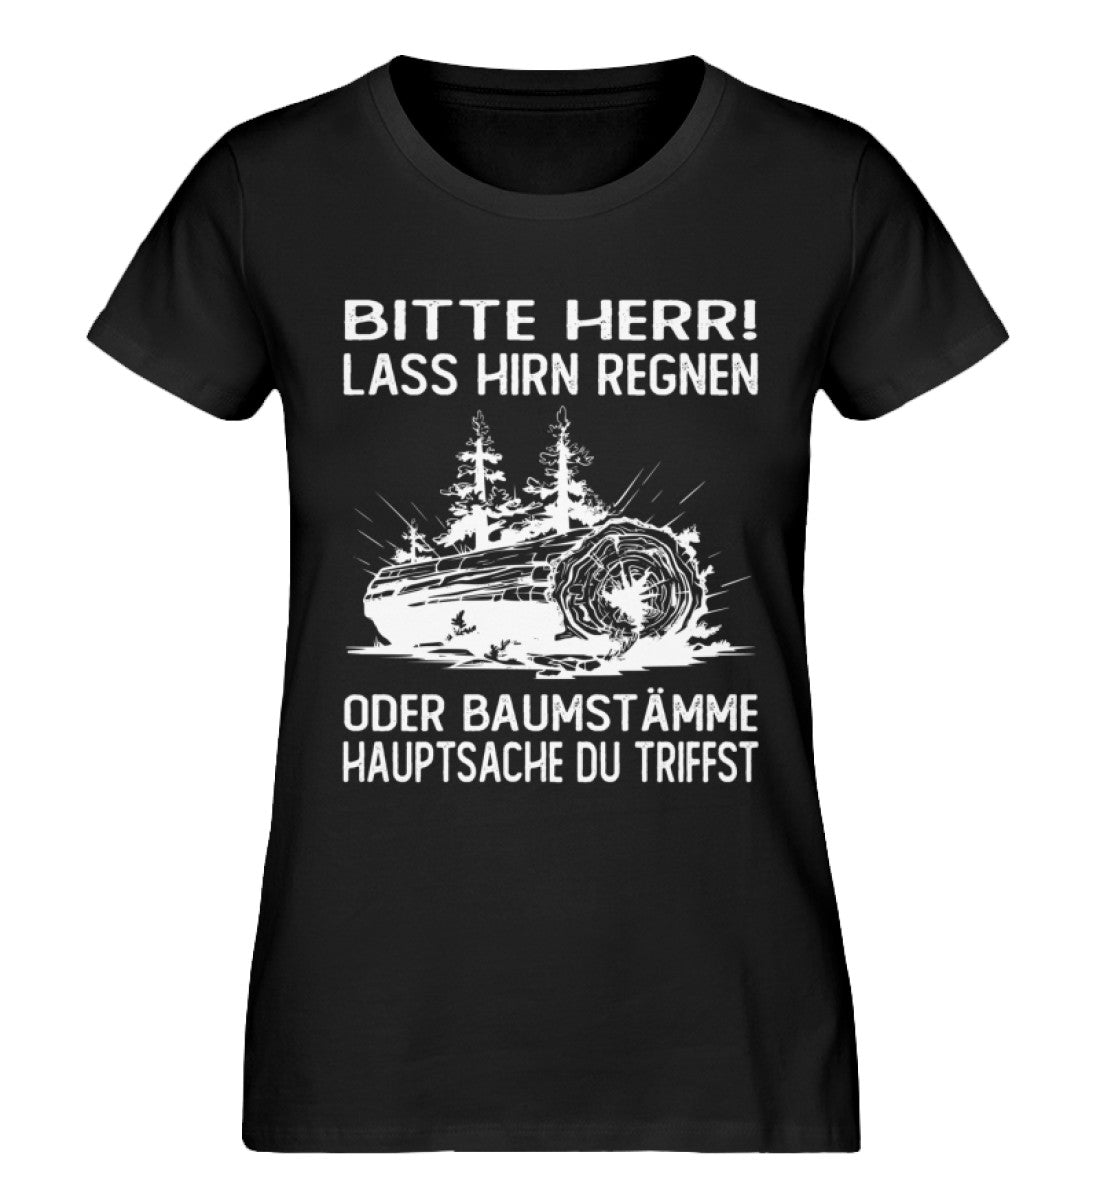 Lass Hirn regnen oder Baumstämme | Herren Basic T-Shirt - waldkumpel.de ...